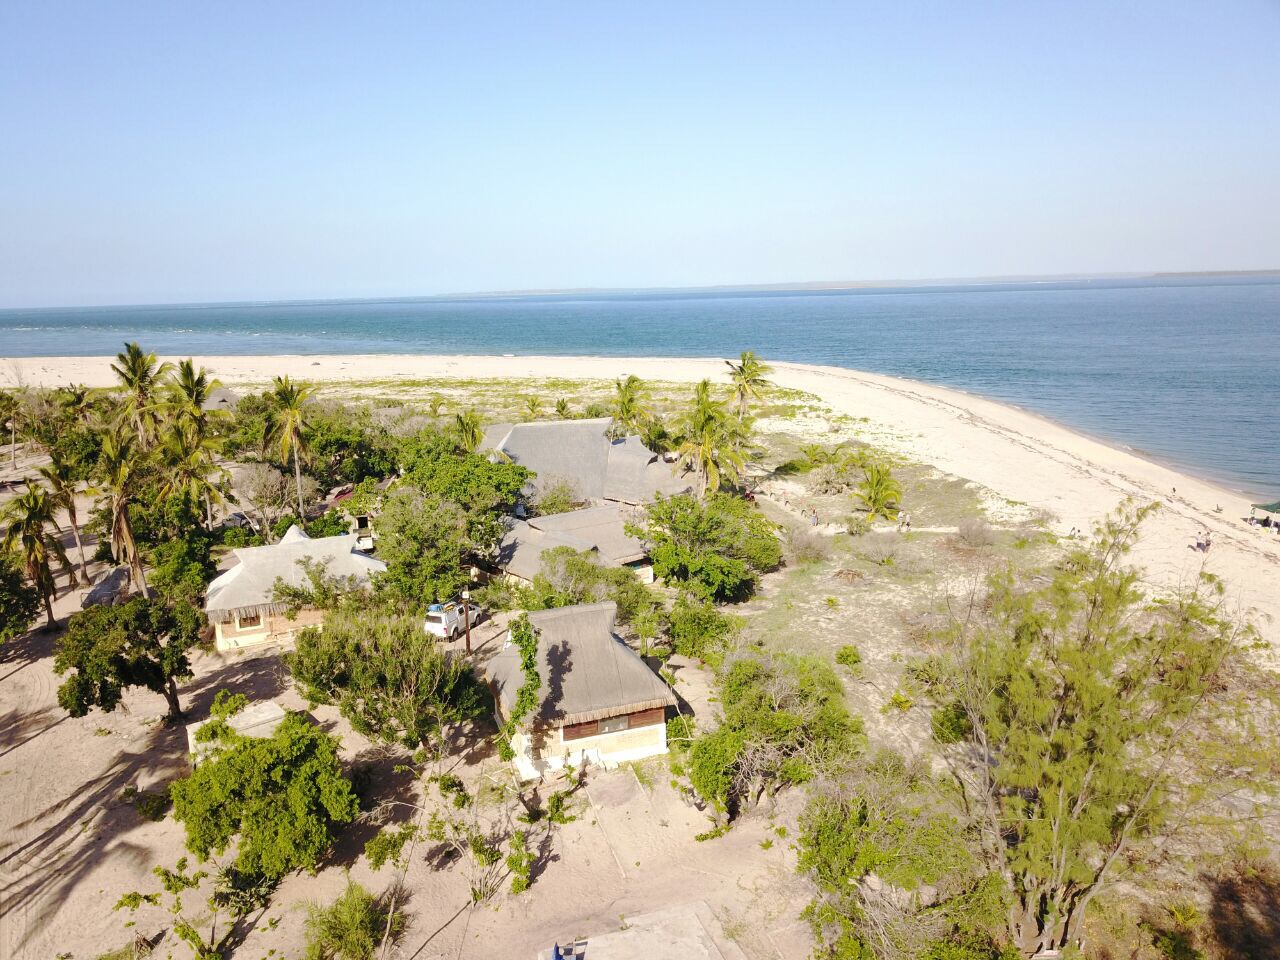 Foto av Marivate Cape Beach och bosättningen